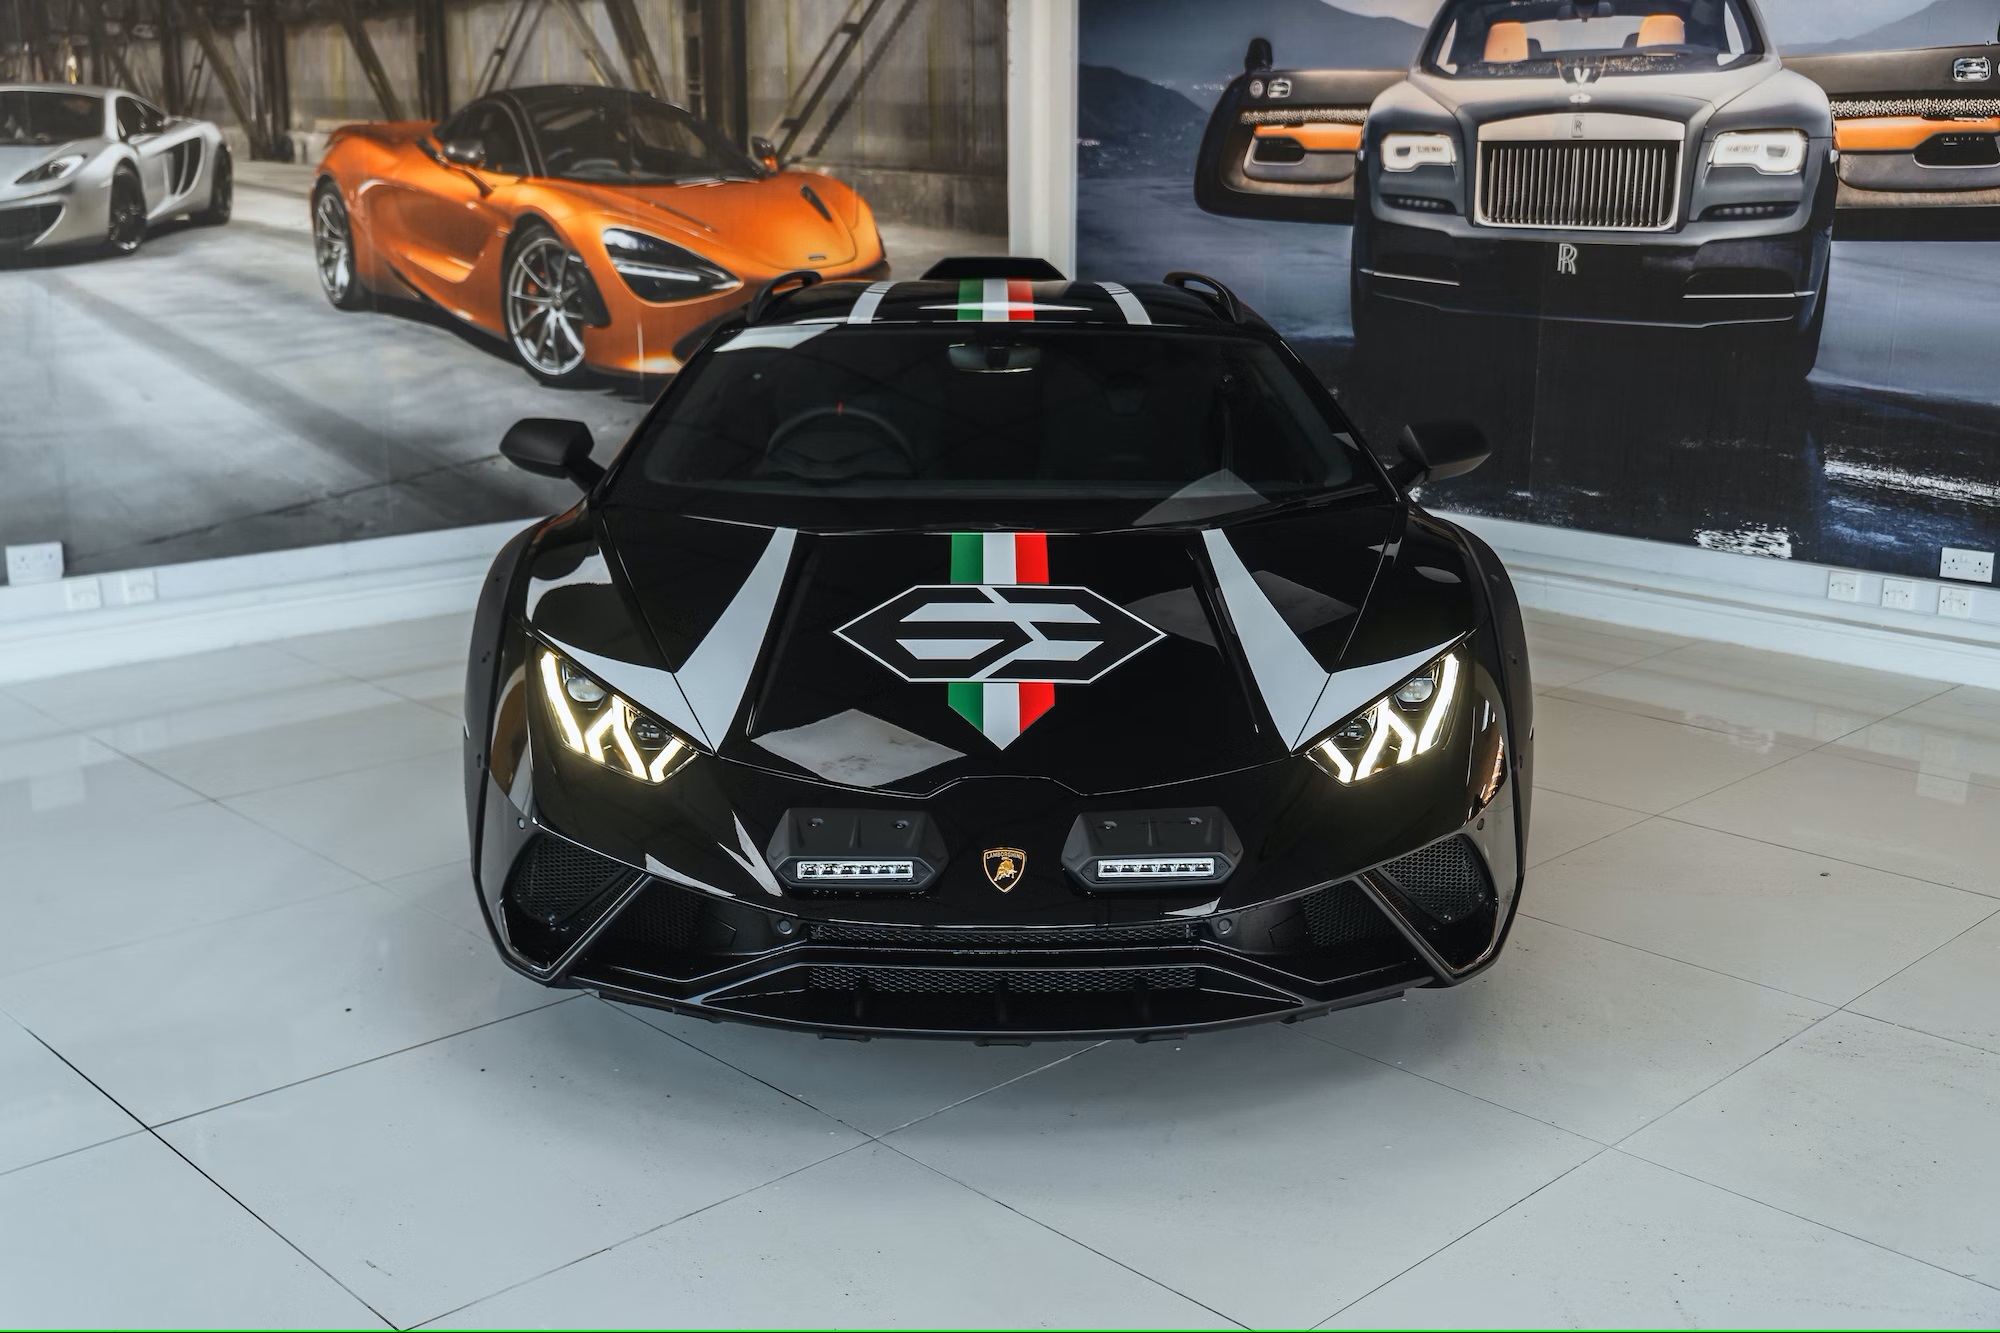 2023 Lamborghini Huracán Sterrato